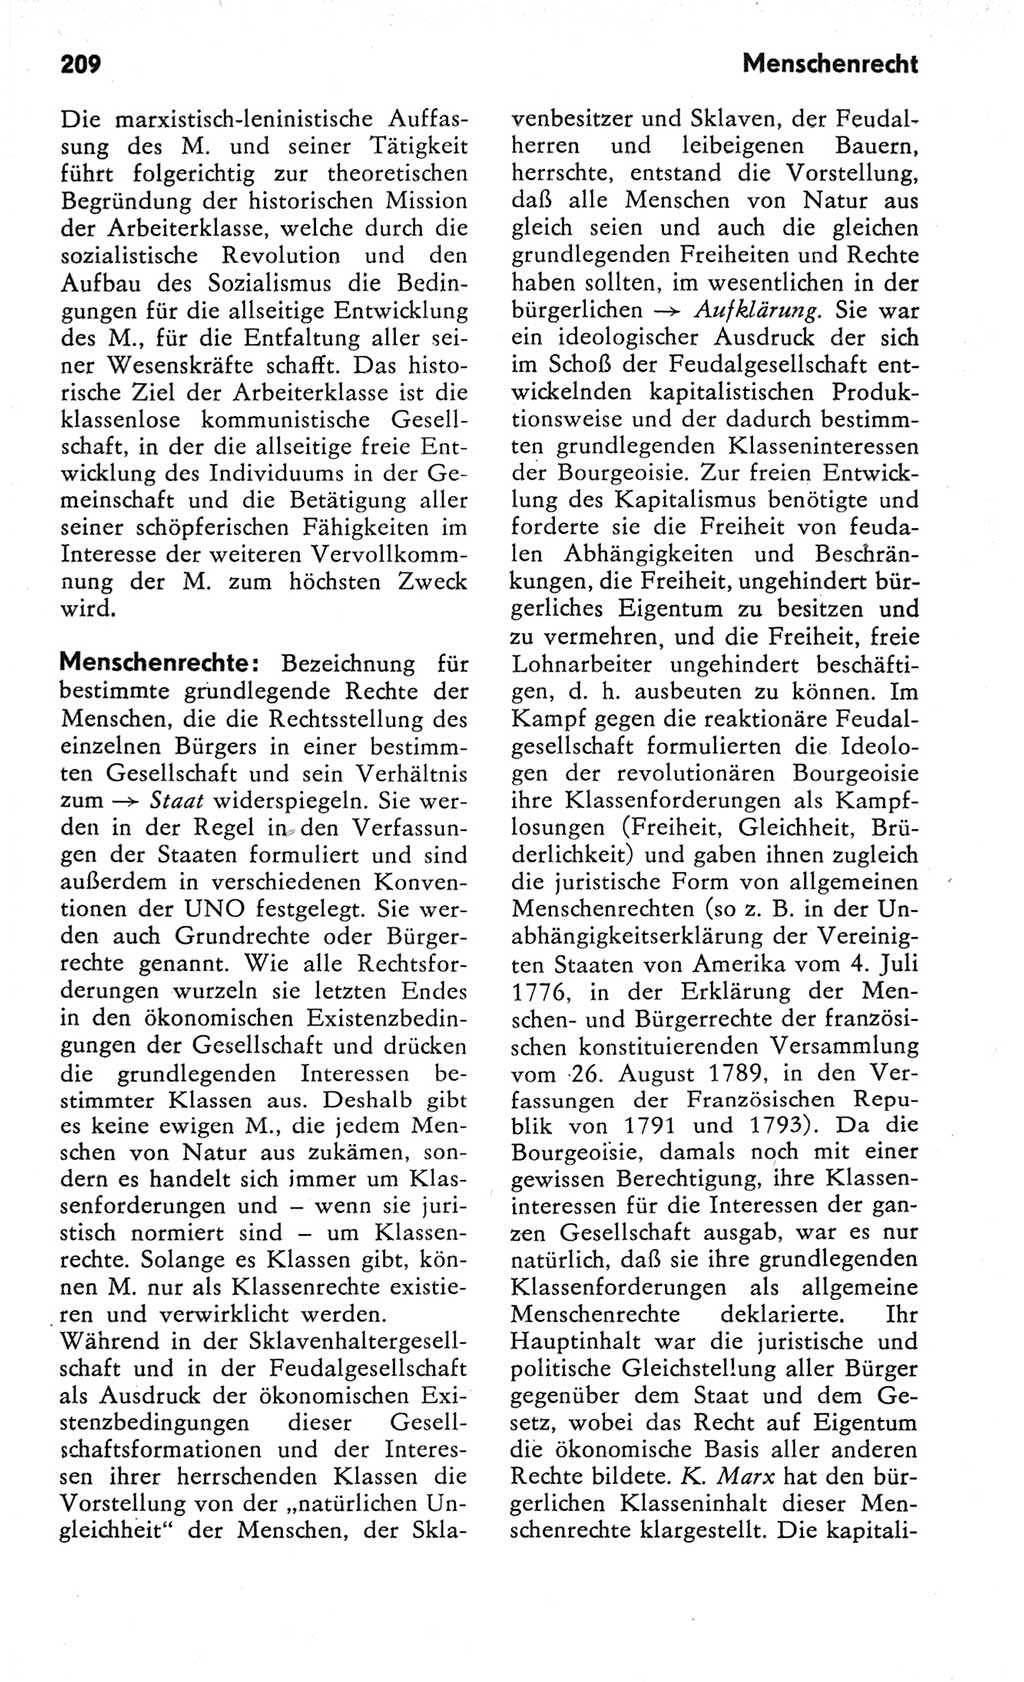 Kleines Wörterbuch der marxistisch-leninistischen Philosophie [Deutsche Demokratische Republik (DDR)] 1982, Seite 209 (Kl. Wb. ML Phil. DDR 1982, S. 209)